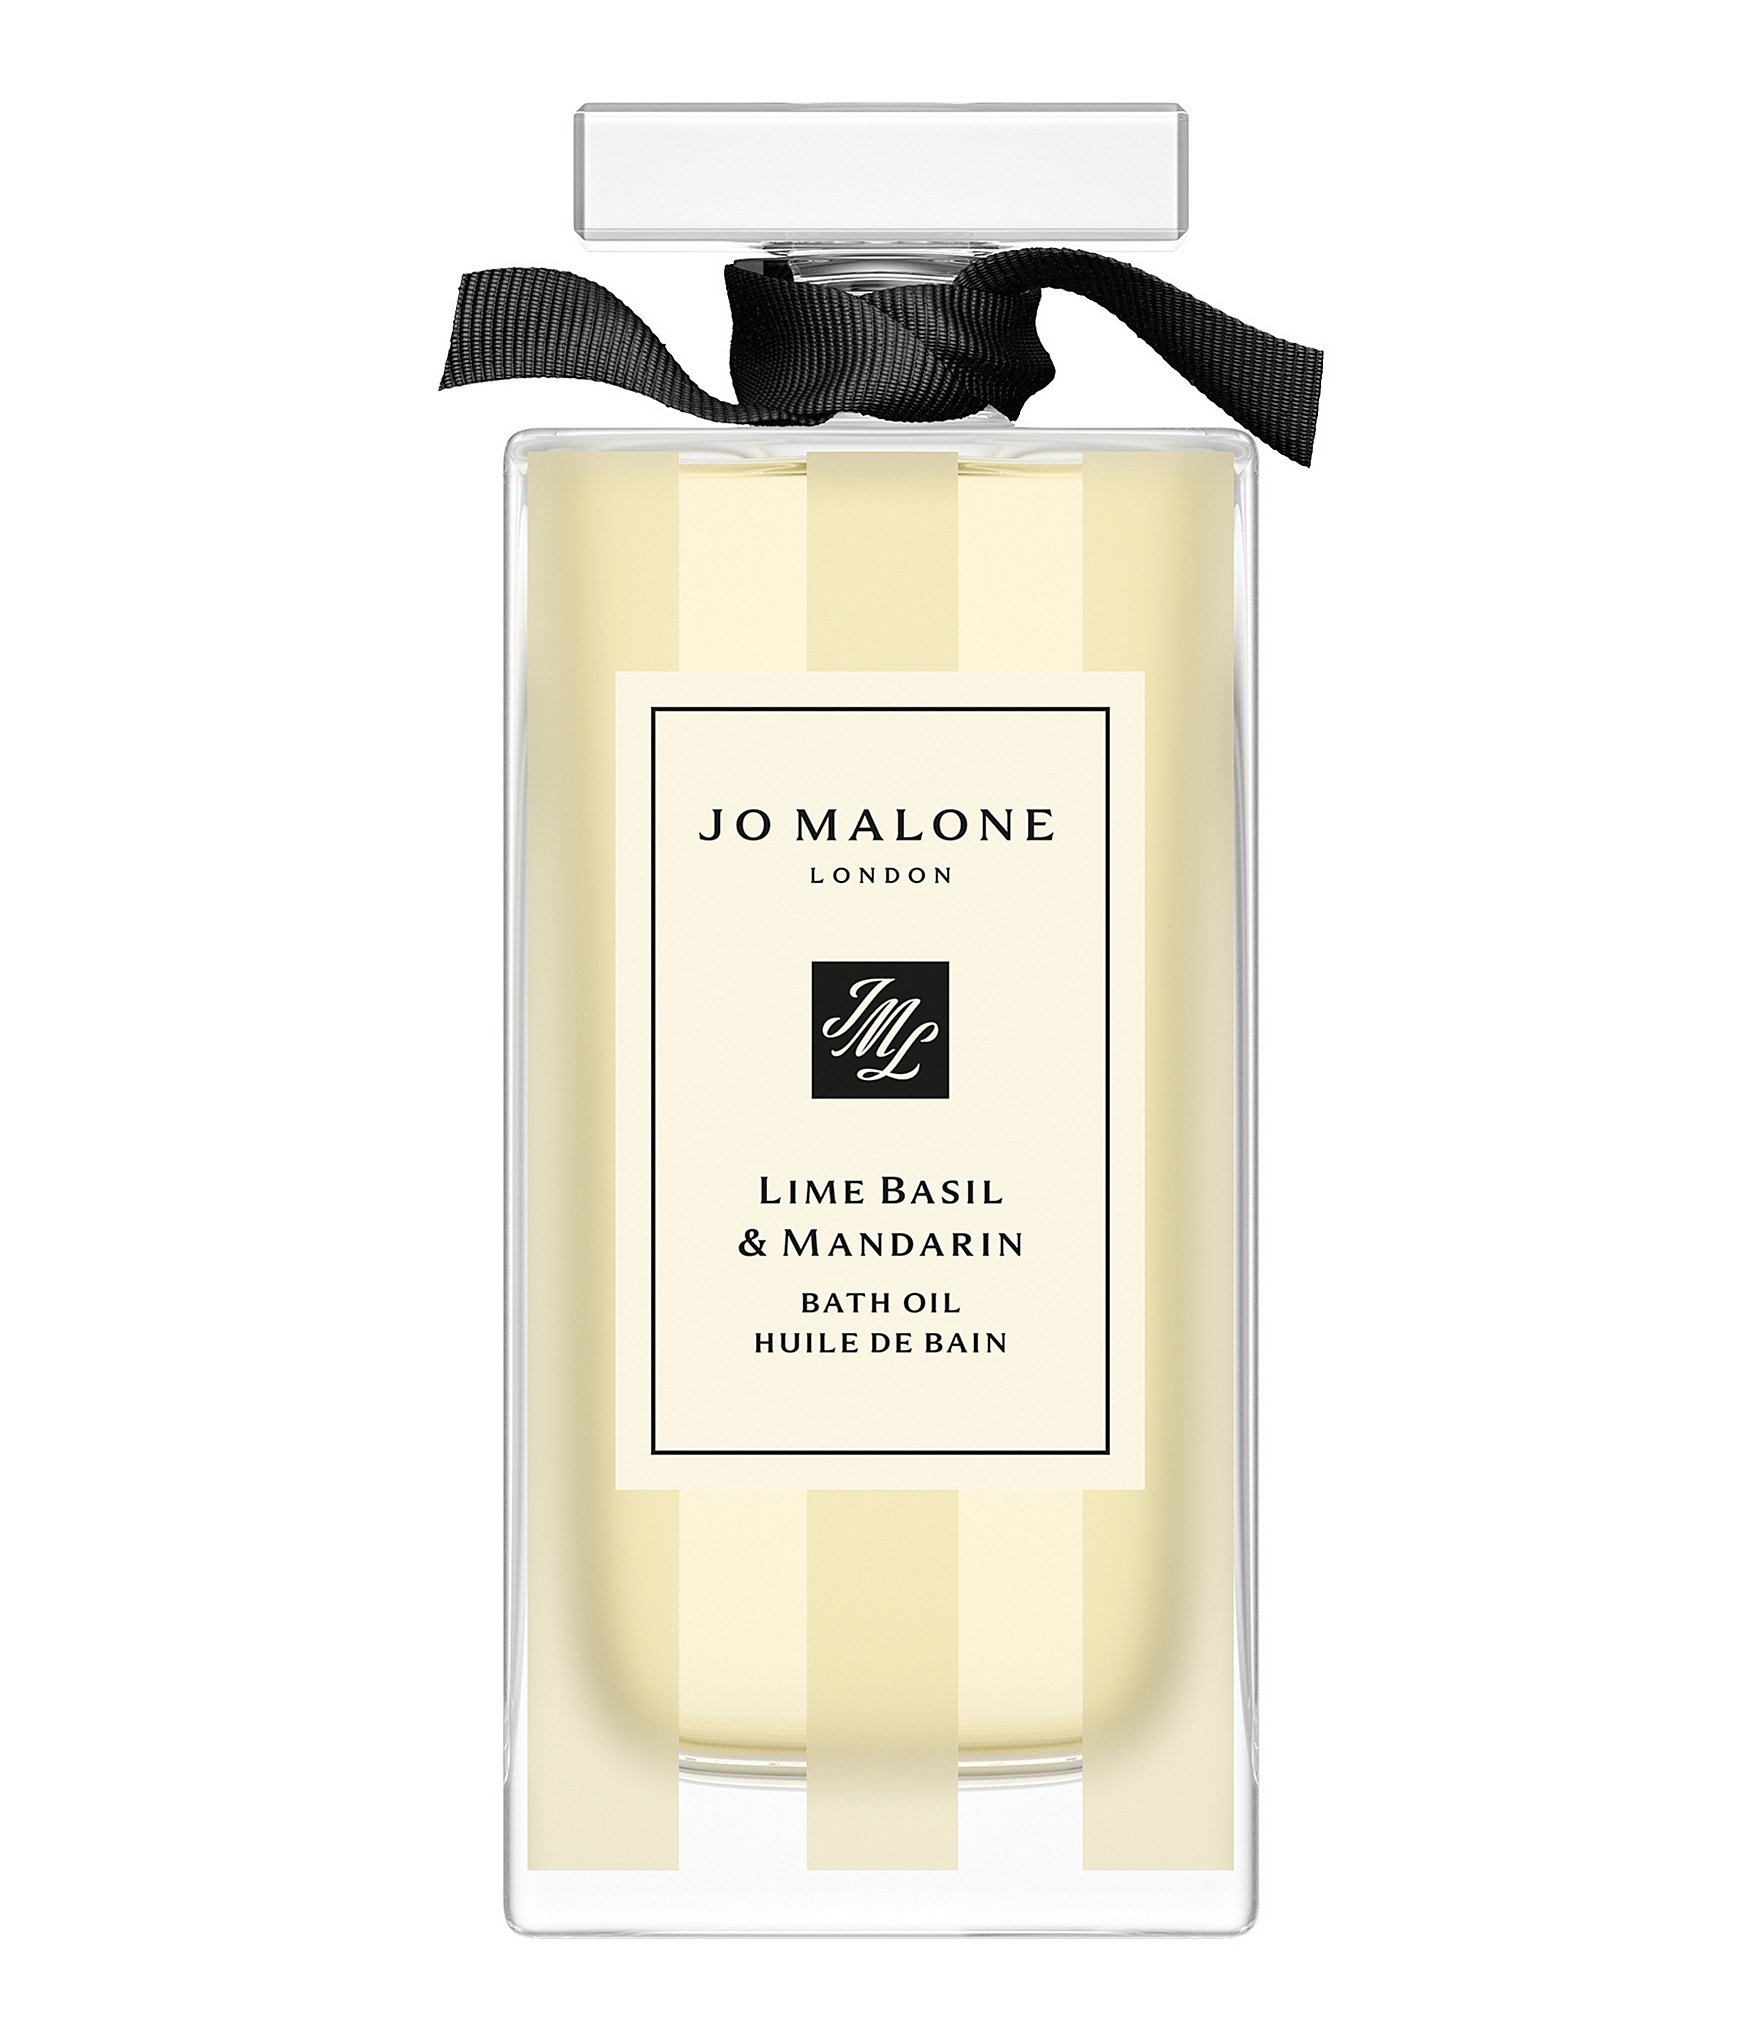 Jo Malone London Lime Basil & Mandarin Bath Oil Decanter, 1-oz. | Dillard's